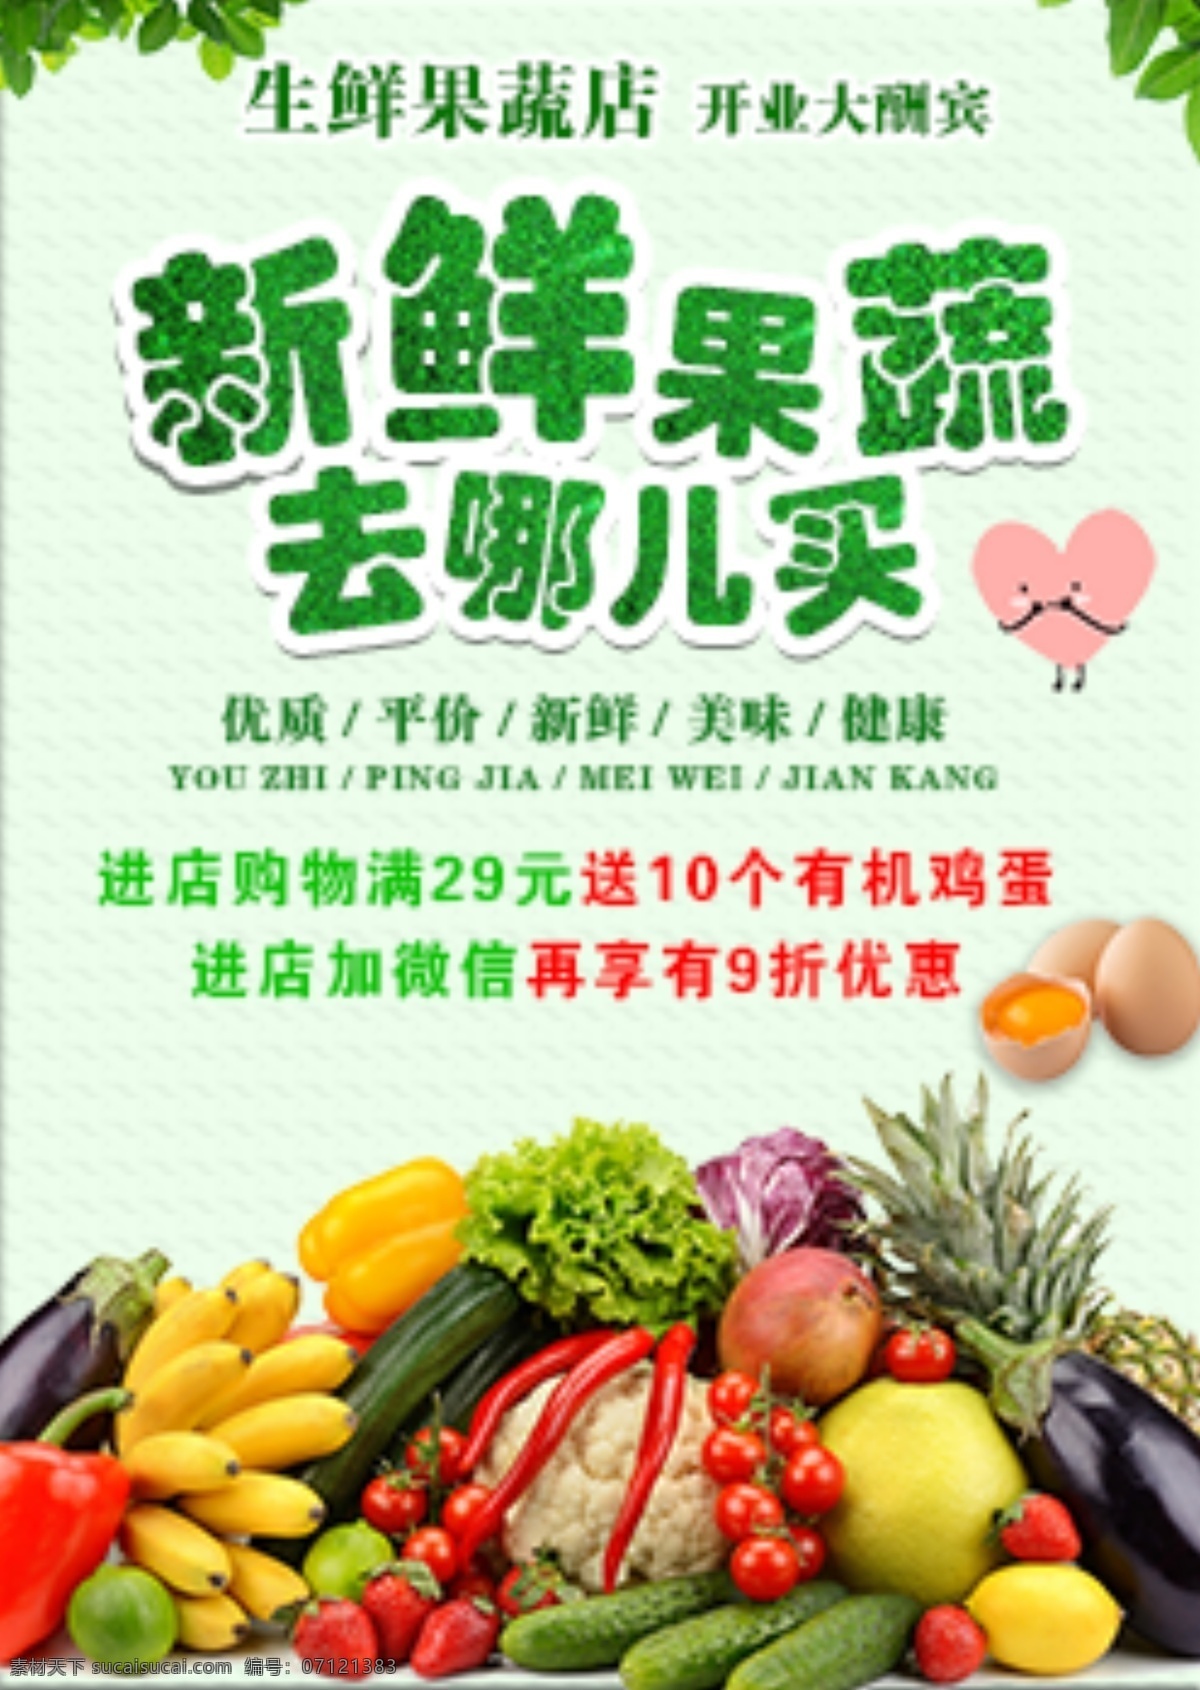 新鲜果蔬 蔬菜广告 水果广告 果蔬宣传单 宣传海报 宣传广告 开业宣传单 果蔬 店 dm宣传单